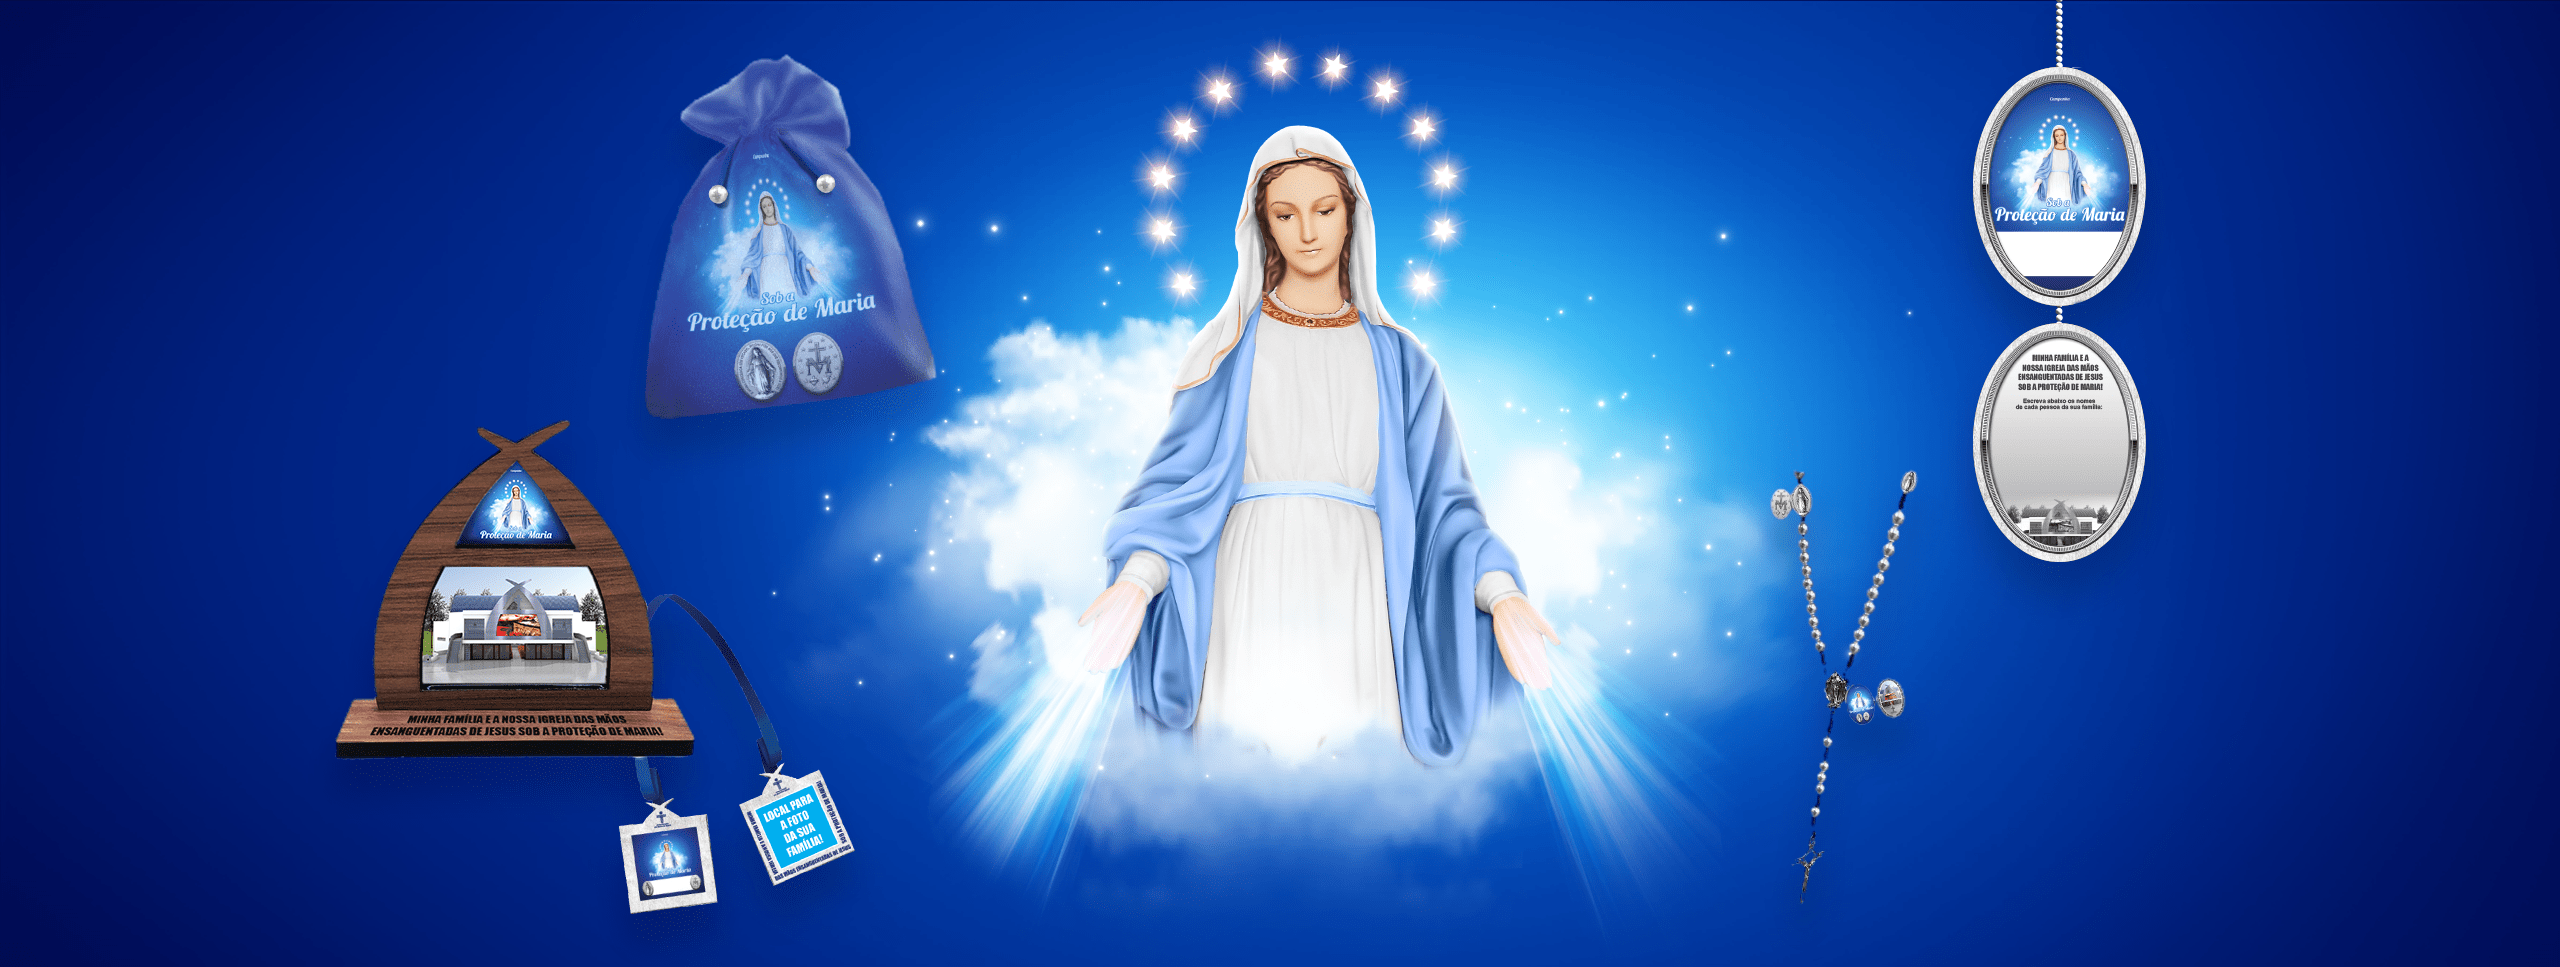 Campanha Sob a Proteção de Maria – Wallpaper